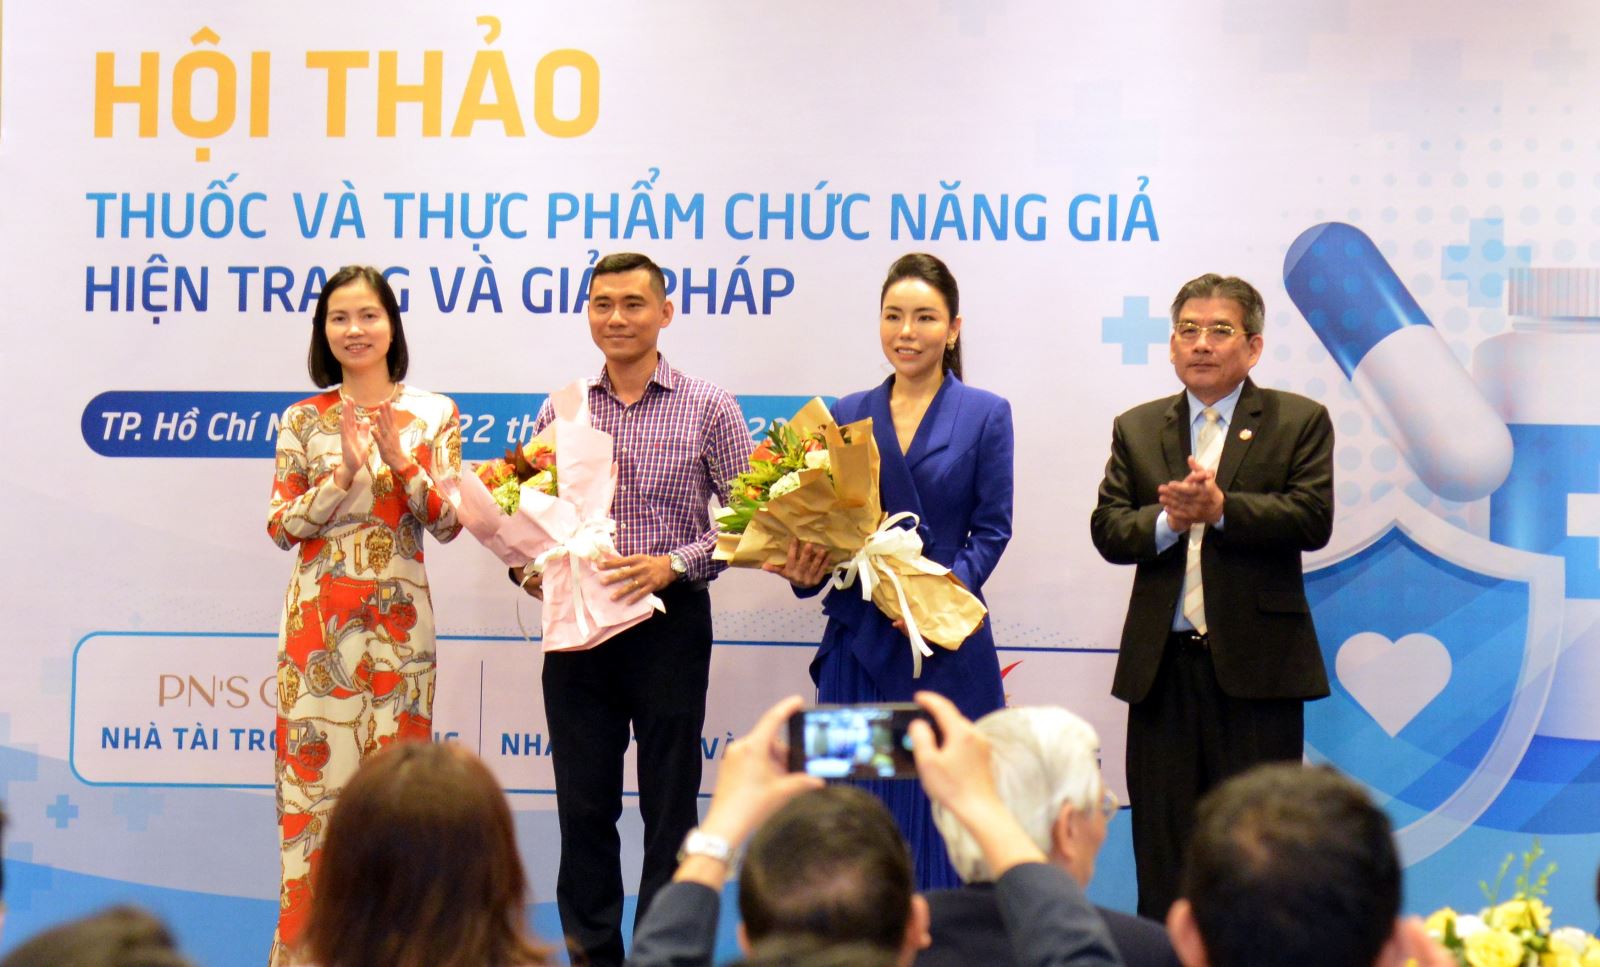 2.	Viện Phát triển Doanh nghiệp và Trung tâm công nghệ chống hàng giả Việt Nam tặng hoa cho doanh nghiệp nỗ lực ứng dụng công nghệ để kiểm soát chặt chẽ thị trường.